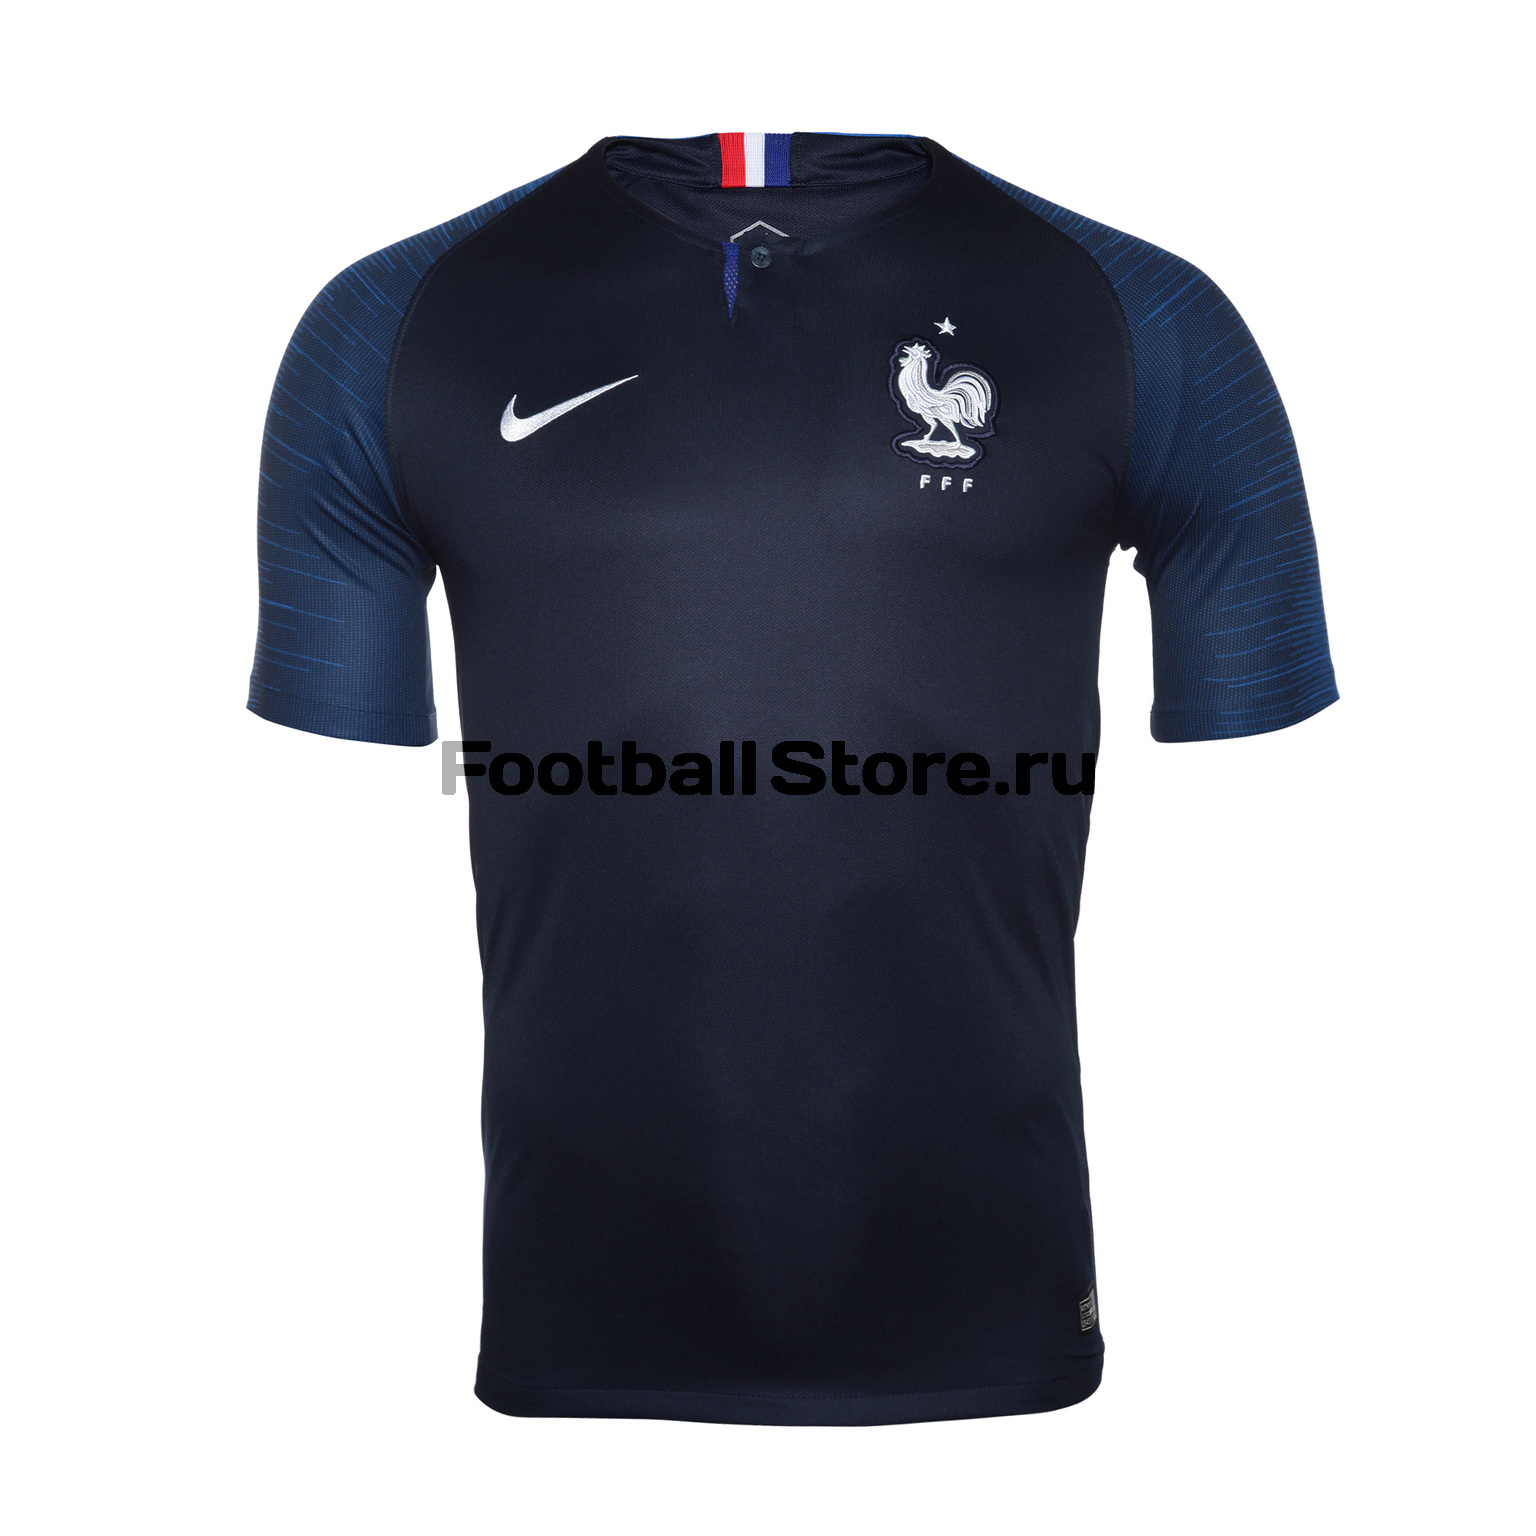 Футболка игровая Nike сборной Франции домашняя 893872-451